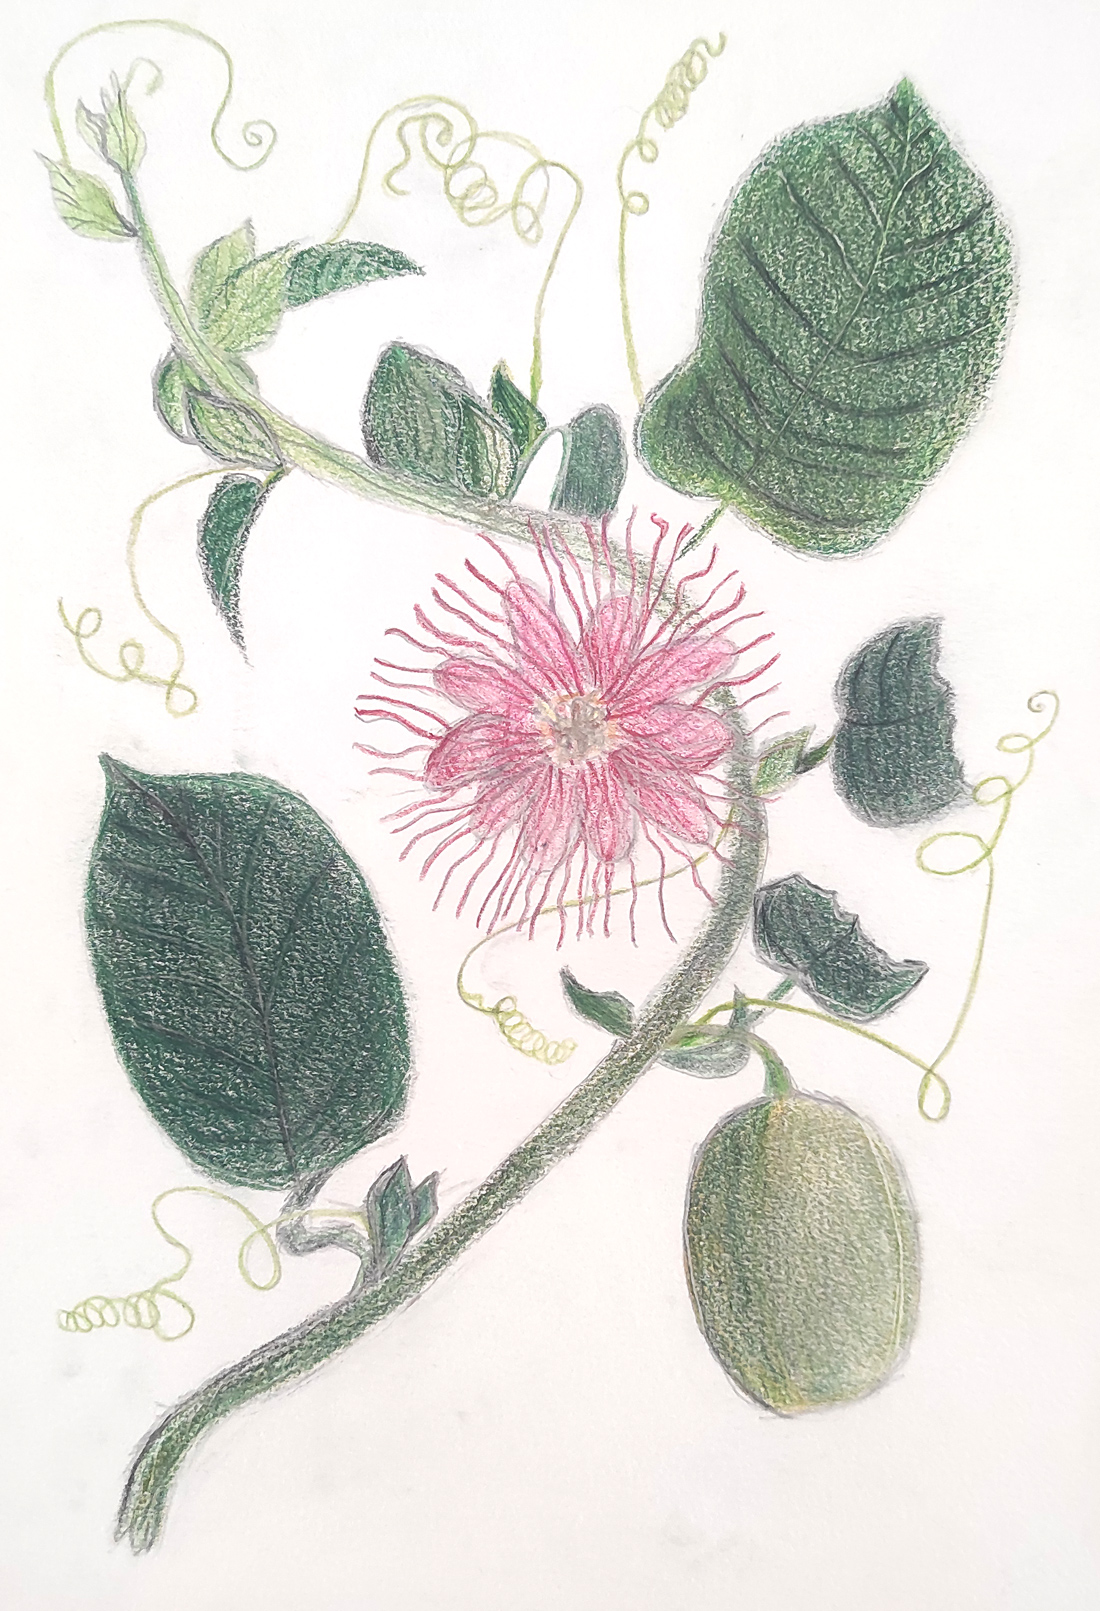 Dibujo de una Passiflora quadranquaris realizado por un alumno de 2º Educación Secundaria del Centro Educativo Gençana